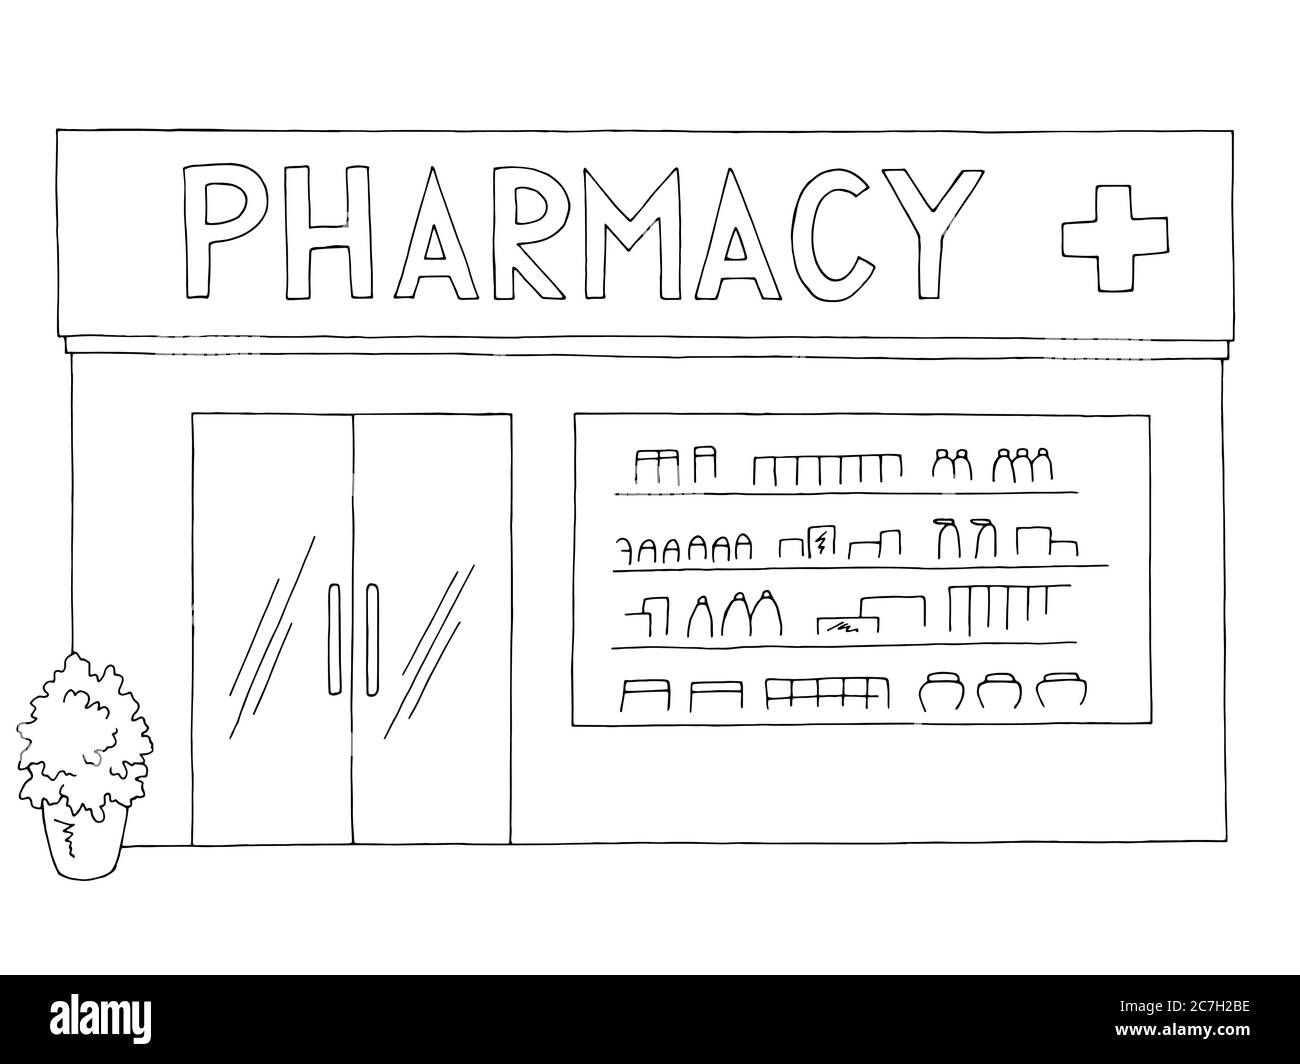 pharmacy clip art black and white